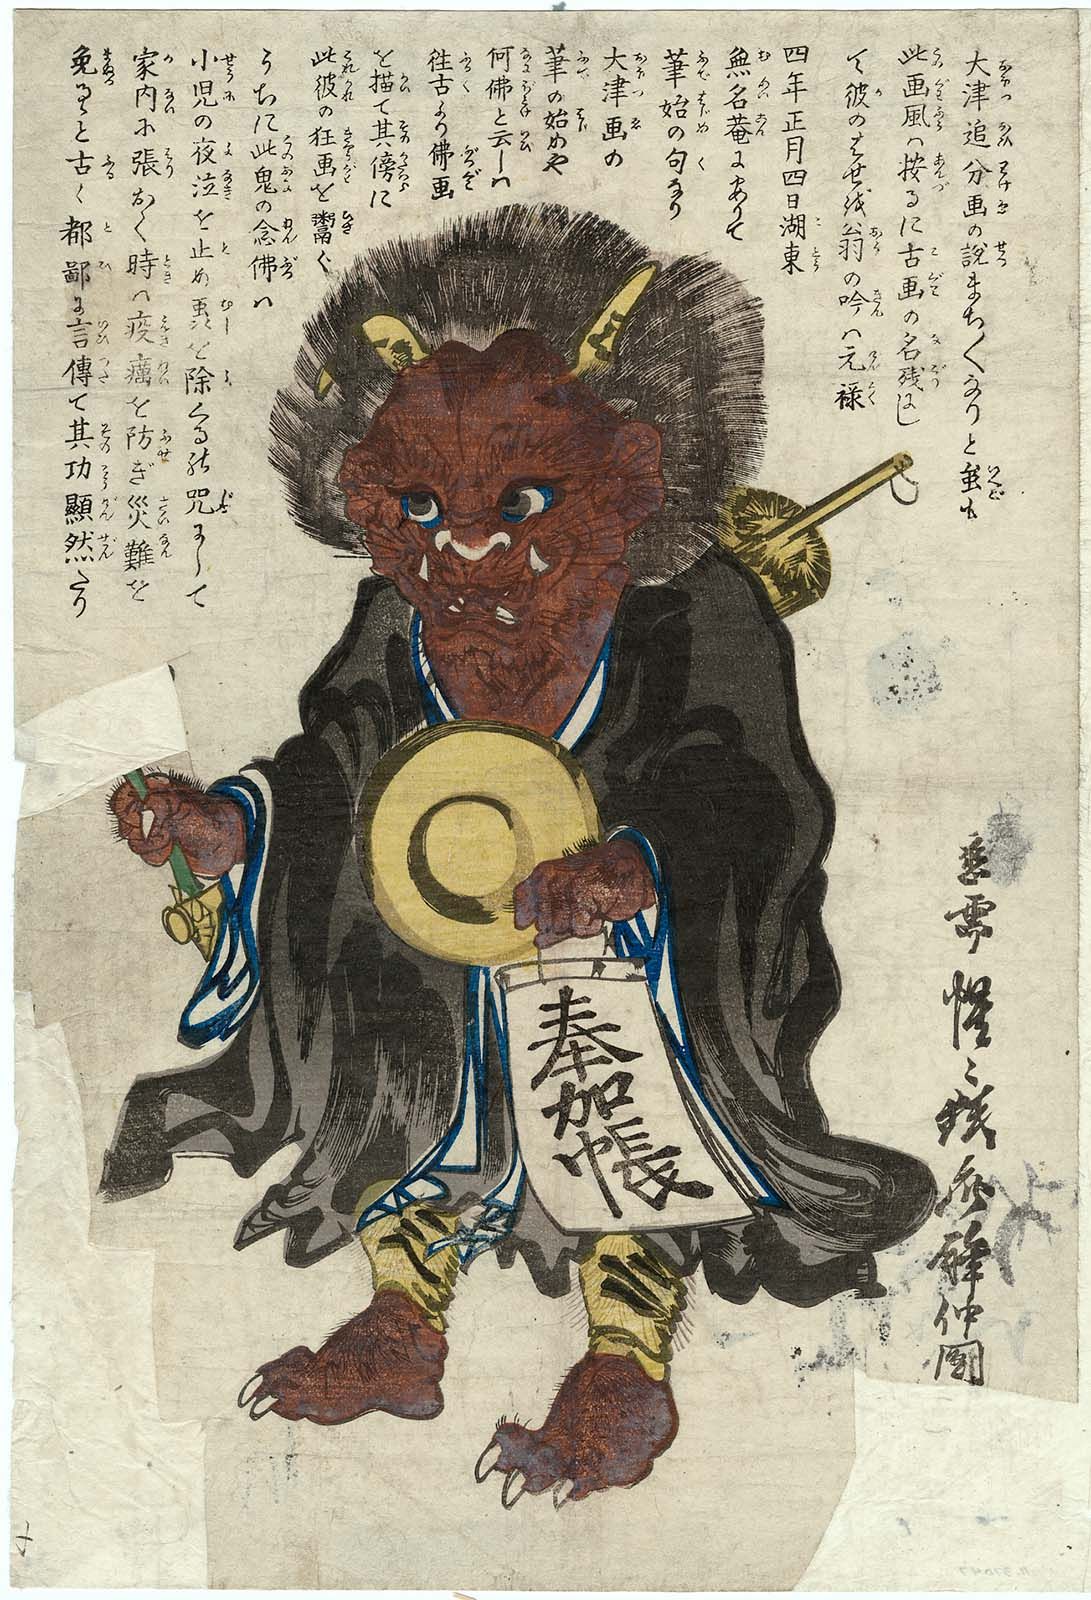 Personaj Ôtsu-e: Demon convertit la budism (Oni no nenbutsu) by Kawanabe Kyōsai - Anii 1860 - 35.8 x 24.3 cm 